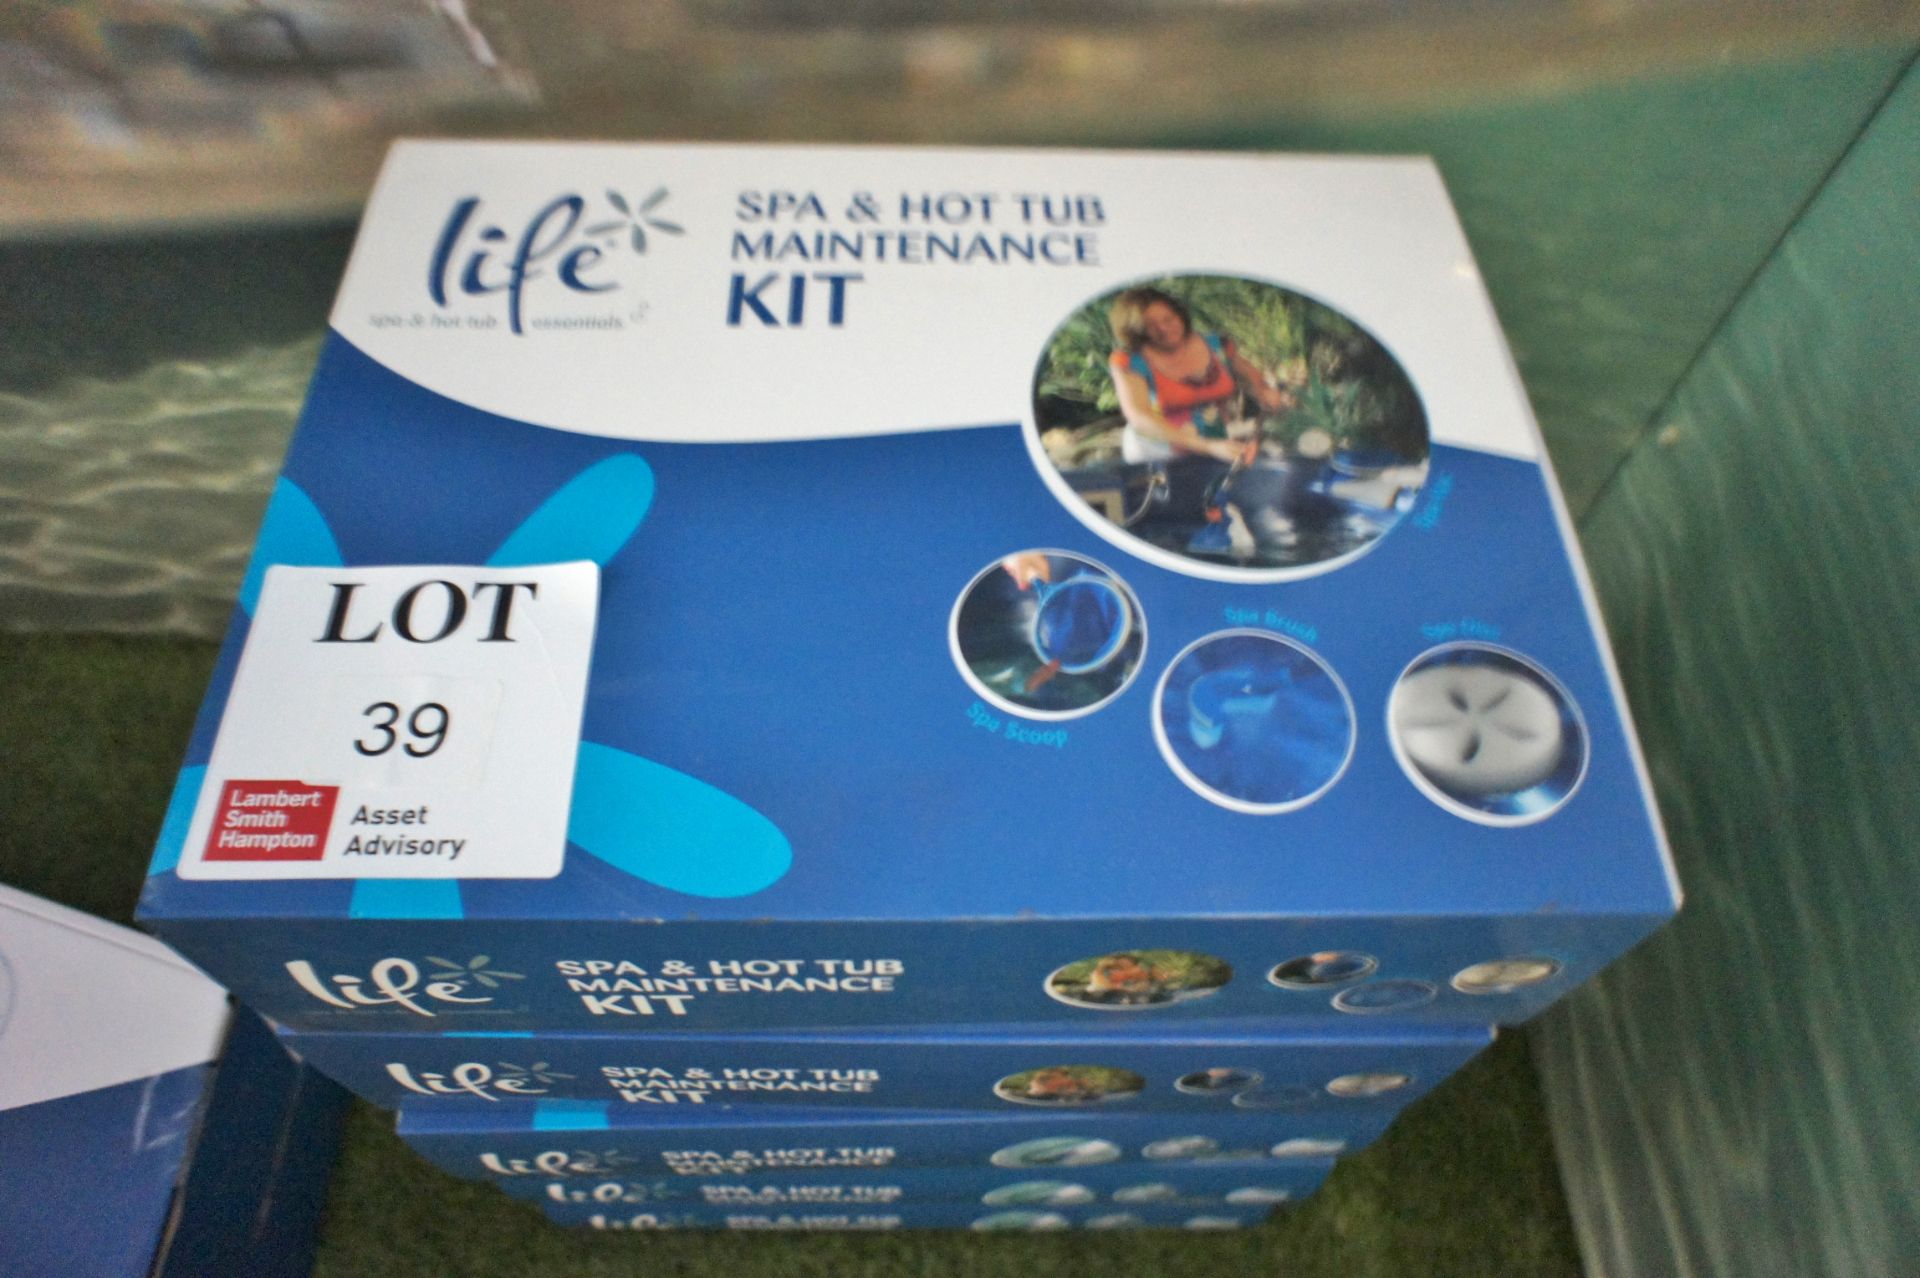 5 x Life Spa and hot tub maintenance kits - Image 2 of 3